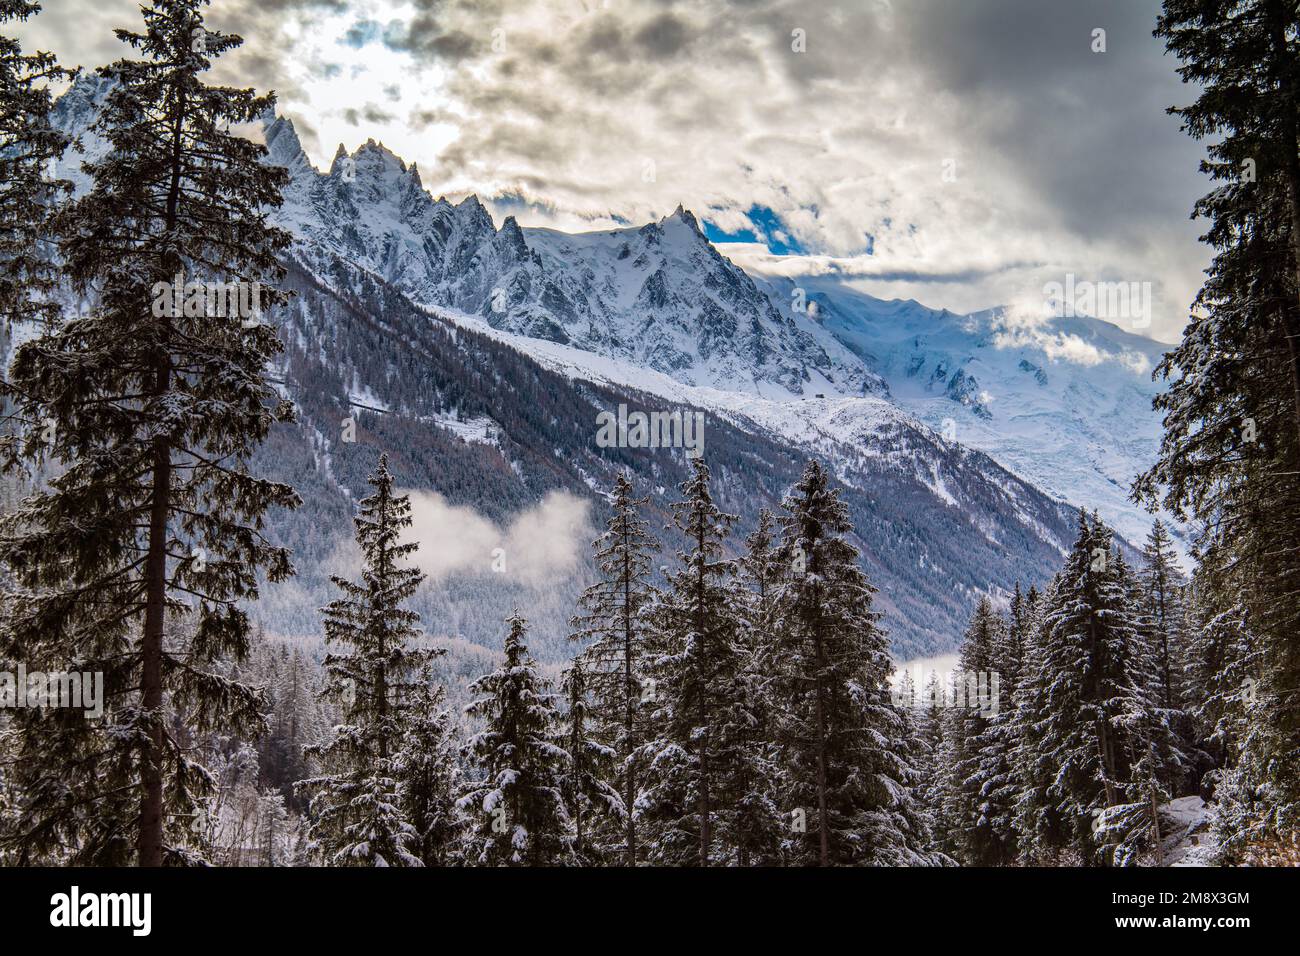 Der Mont Blanc wurde an einem hellen Dezembermorgen von den Hügeln von Servoz aus fotografiert. Servoz ist eine Gemeinde in der französischen Region Haute-Savoie. Stockfoto